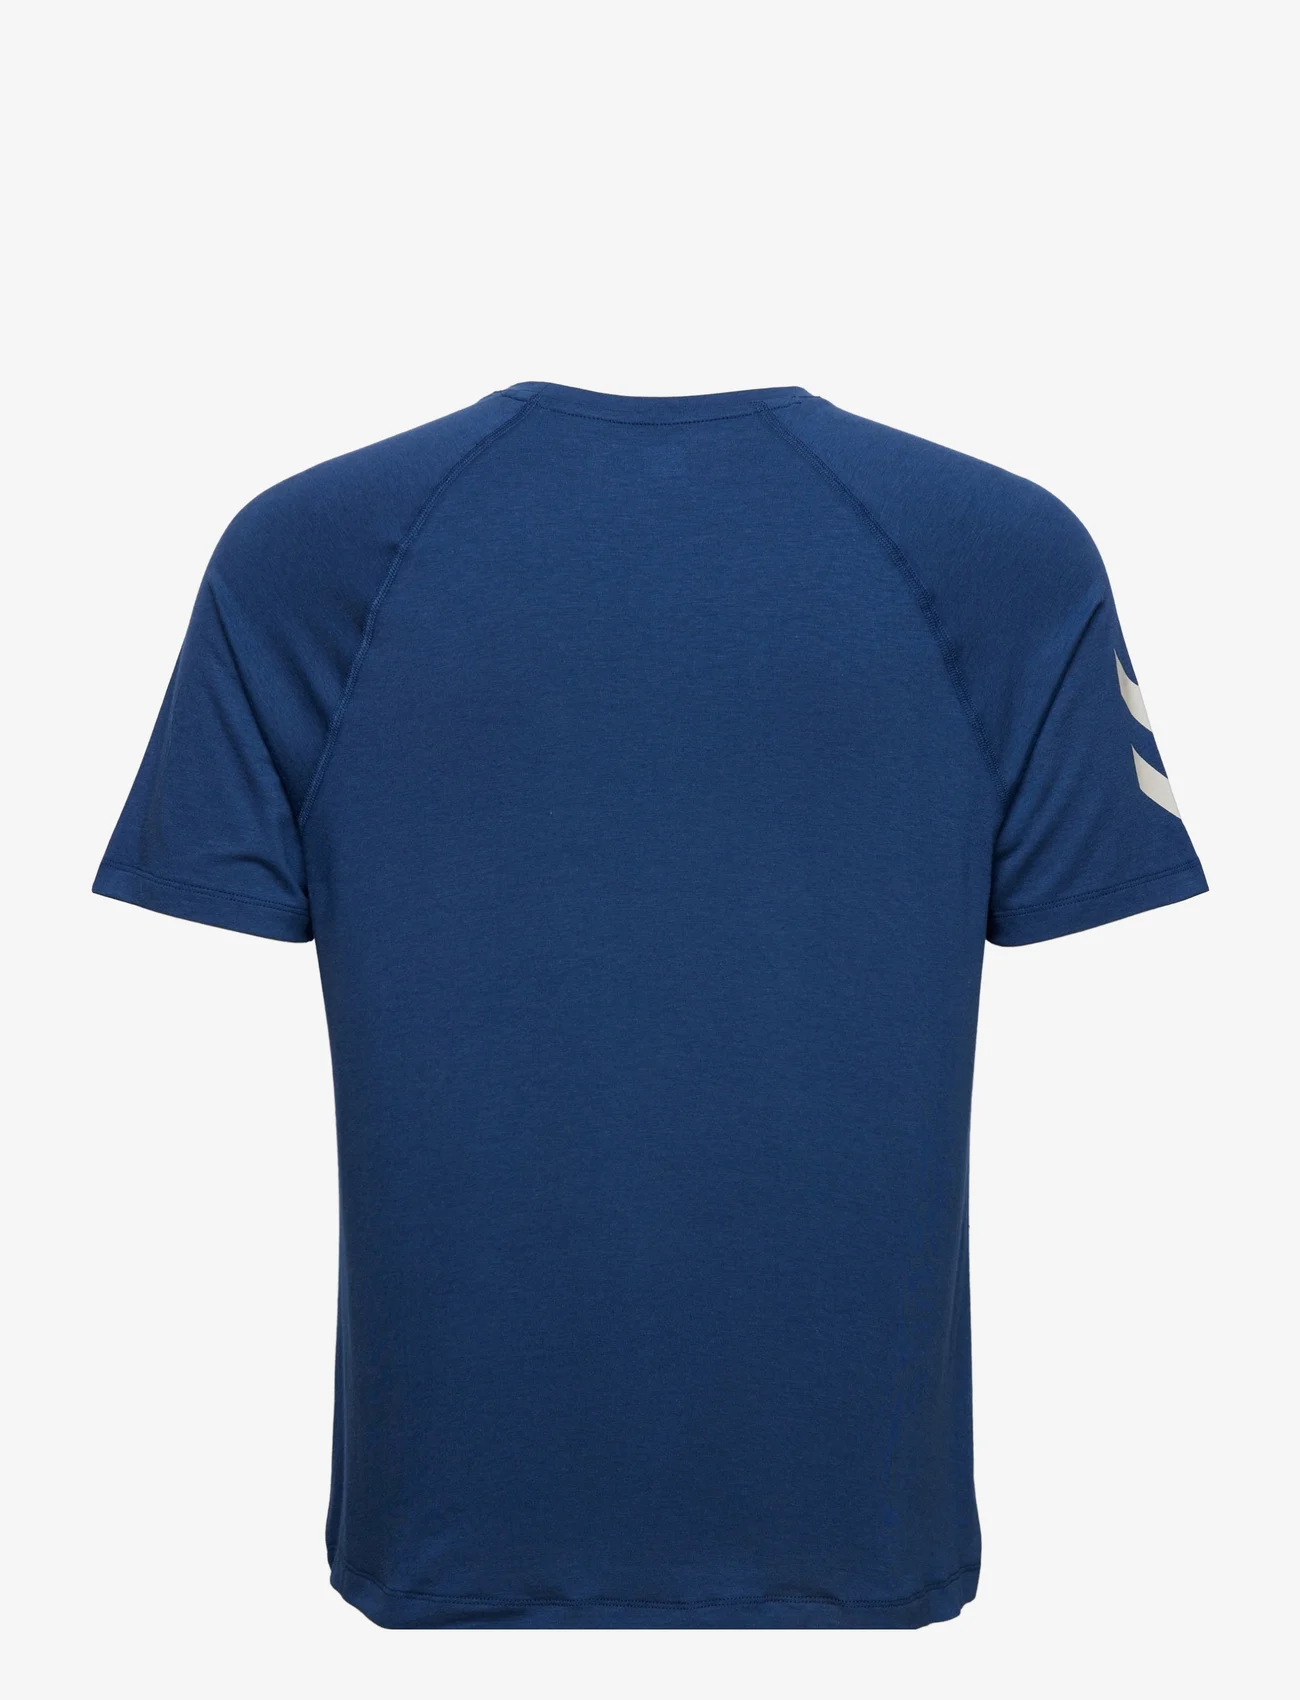 Hummel - hmlMT LAZE T-SHIRT - kortermede t-skjorter - insignia blue - 1